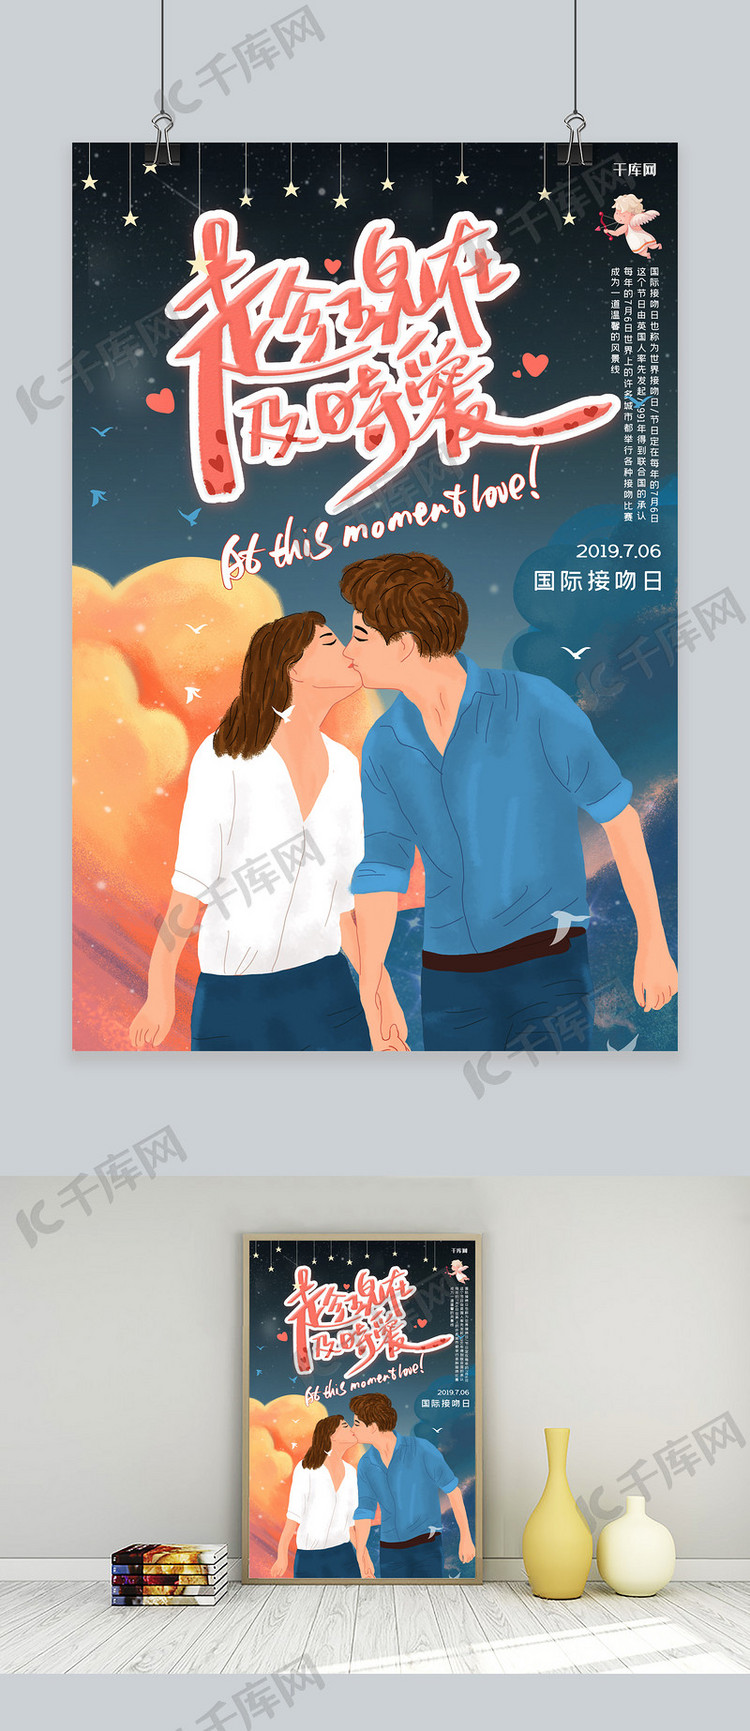 国际接吻日亲吻爱情情侣丘比特接吻日7月6日海报